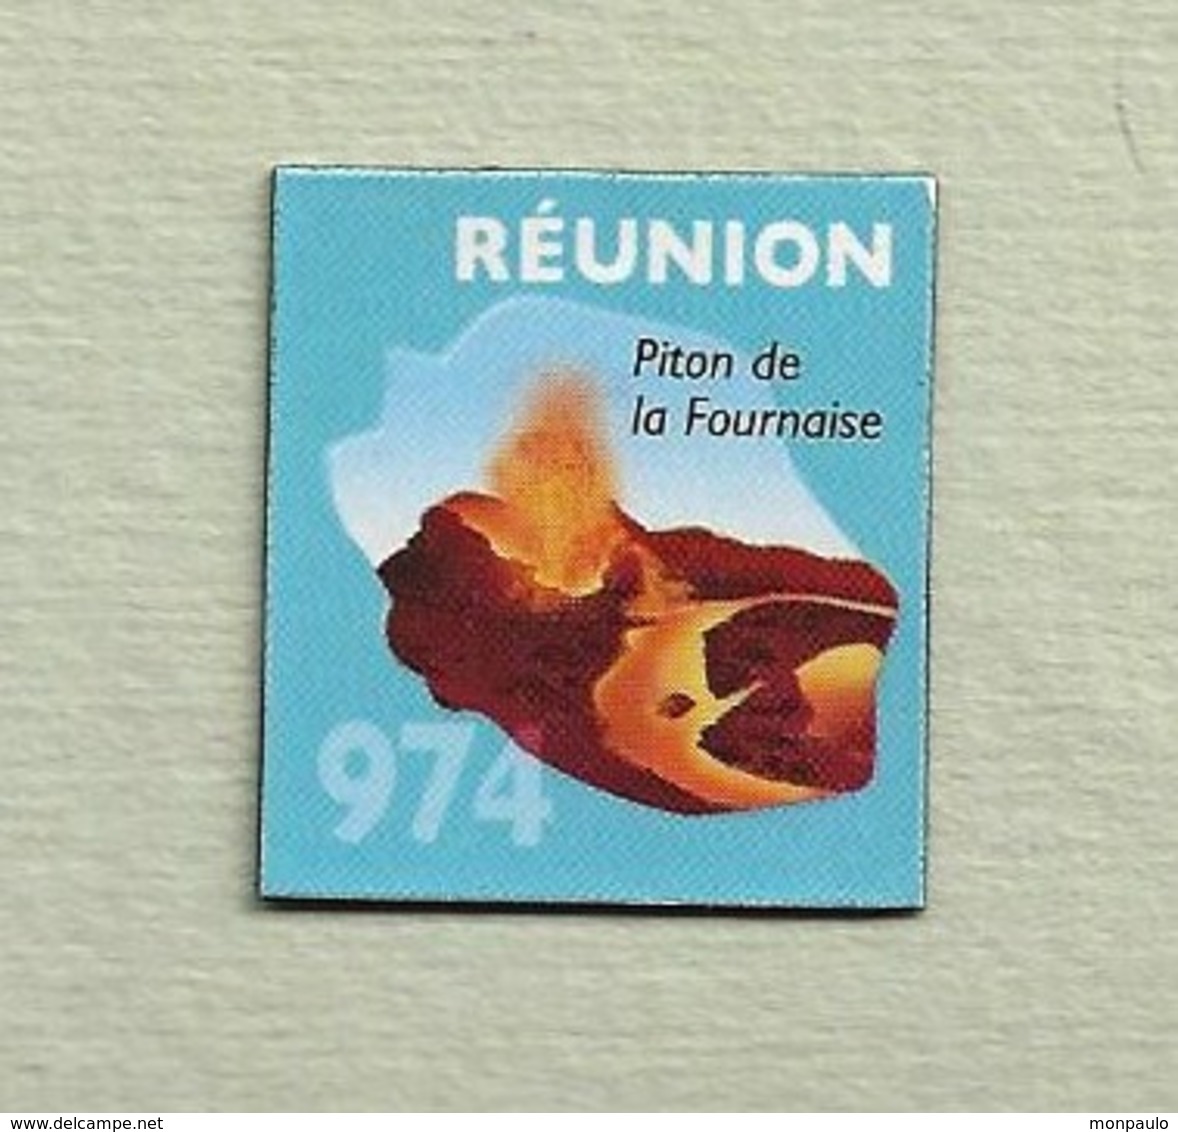 Magnets. Magnets "Le Gaulois" Départements Français. Réunion (974) - Advertising